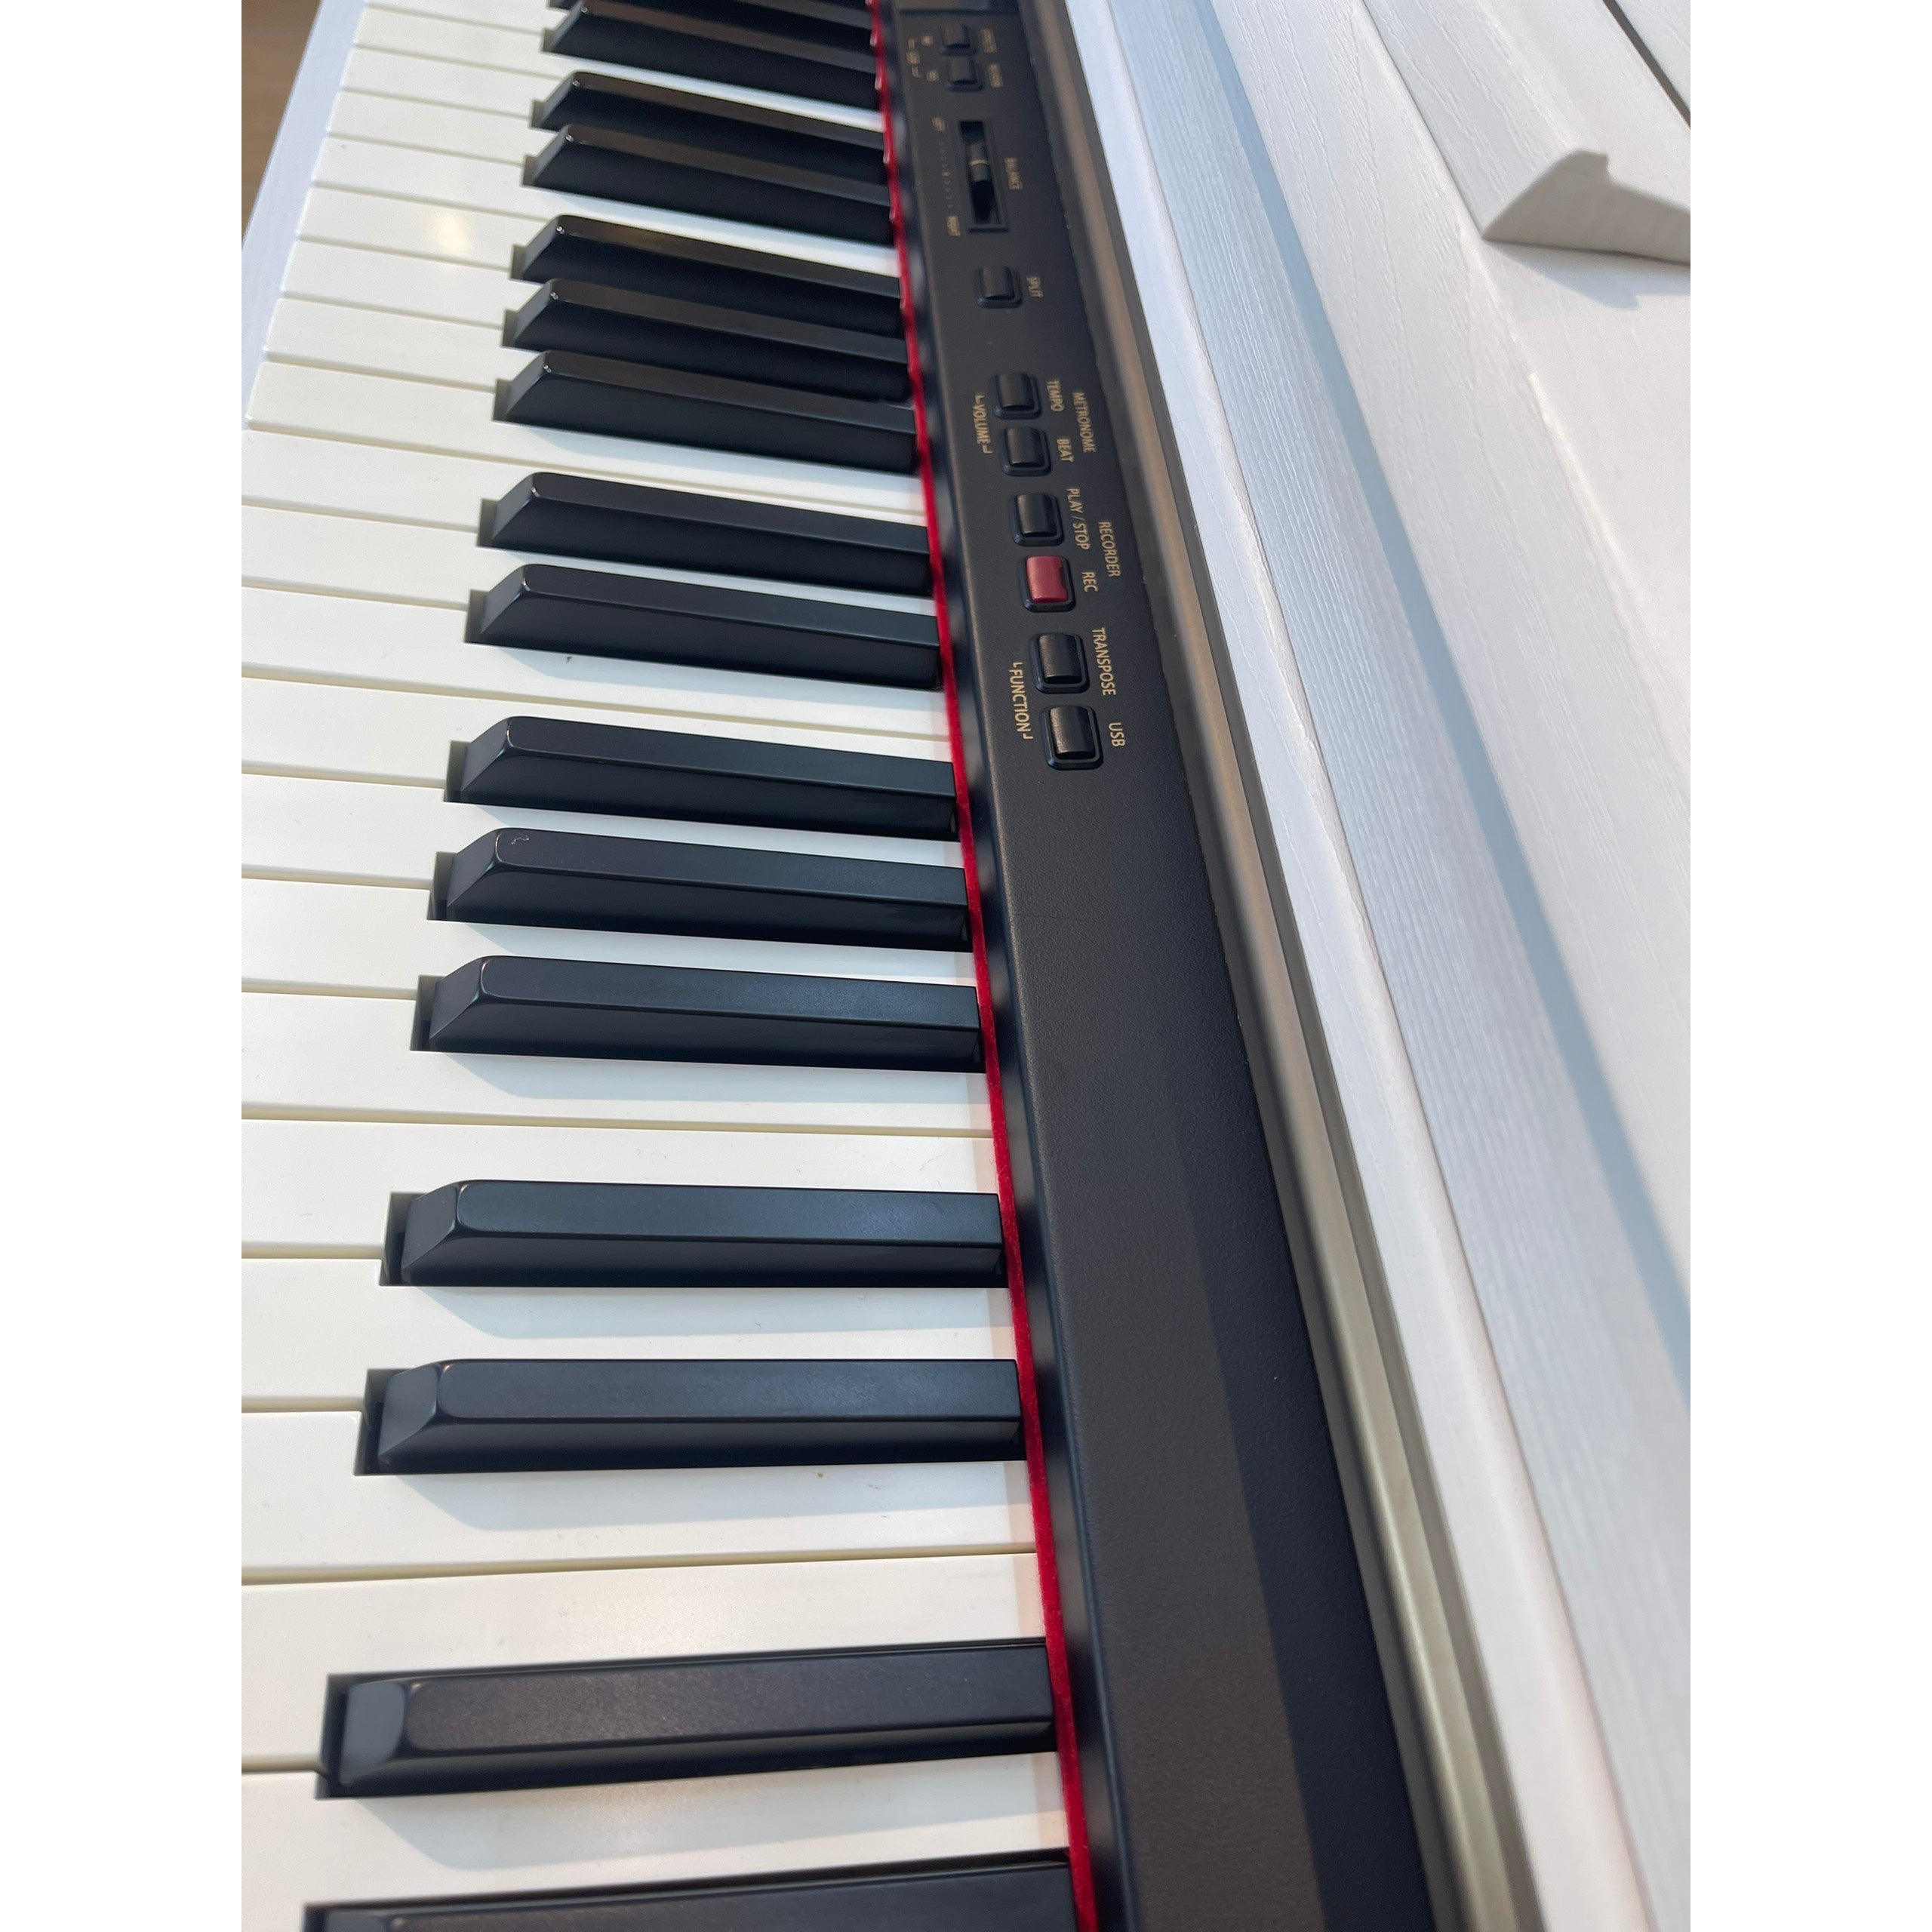 Đàn Piano Điện Kawai CN33 - Qua Sử Dụng